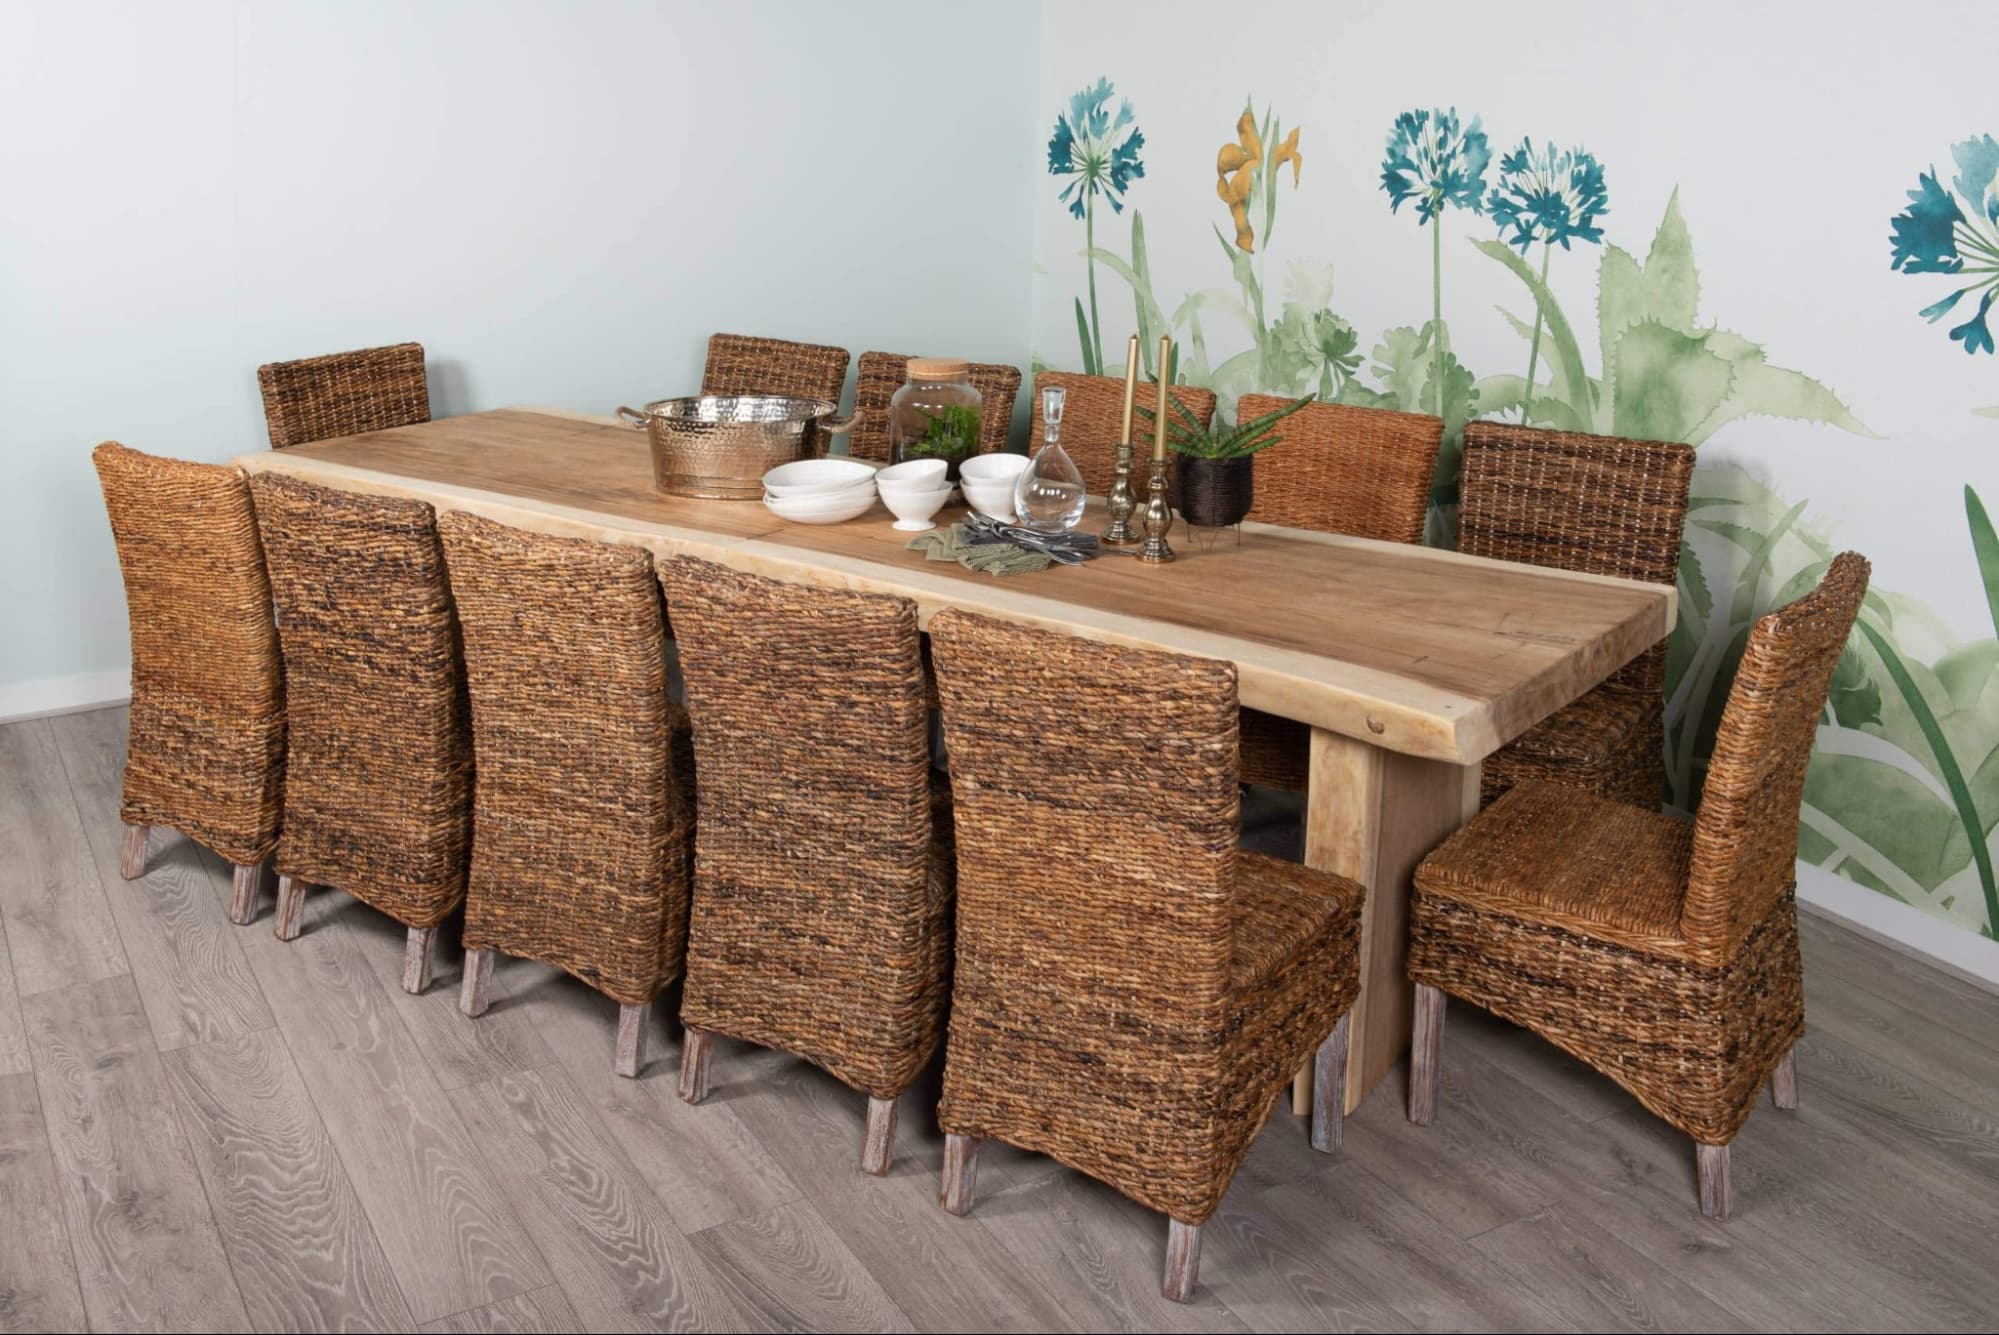 Chiêm ngưỡng thiết kế sang trọng của những mẫu bàn ăn bằng gỗ tự nhiên